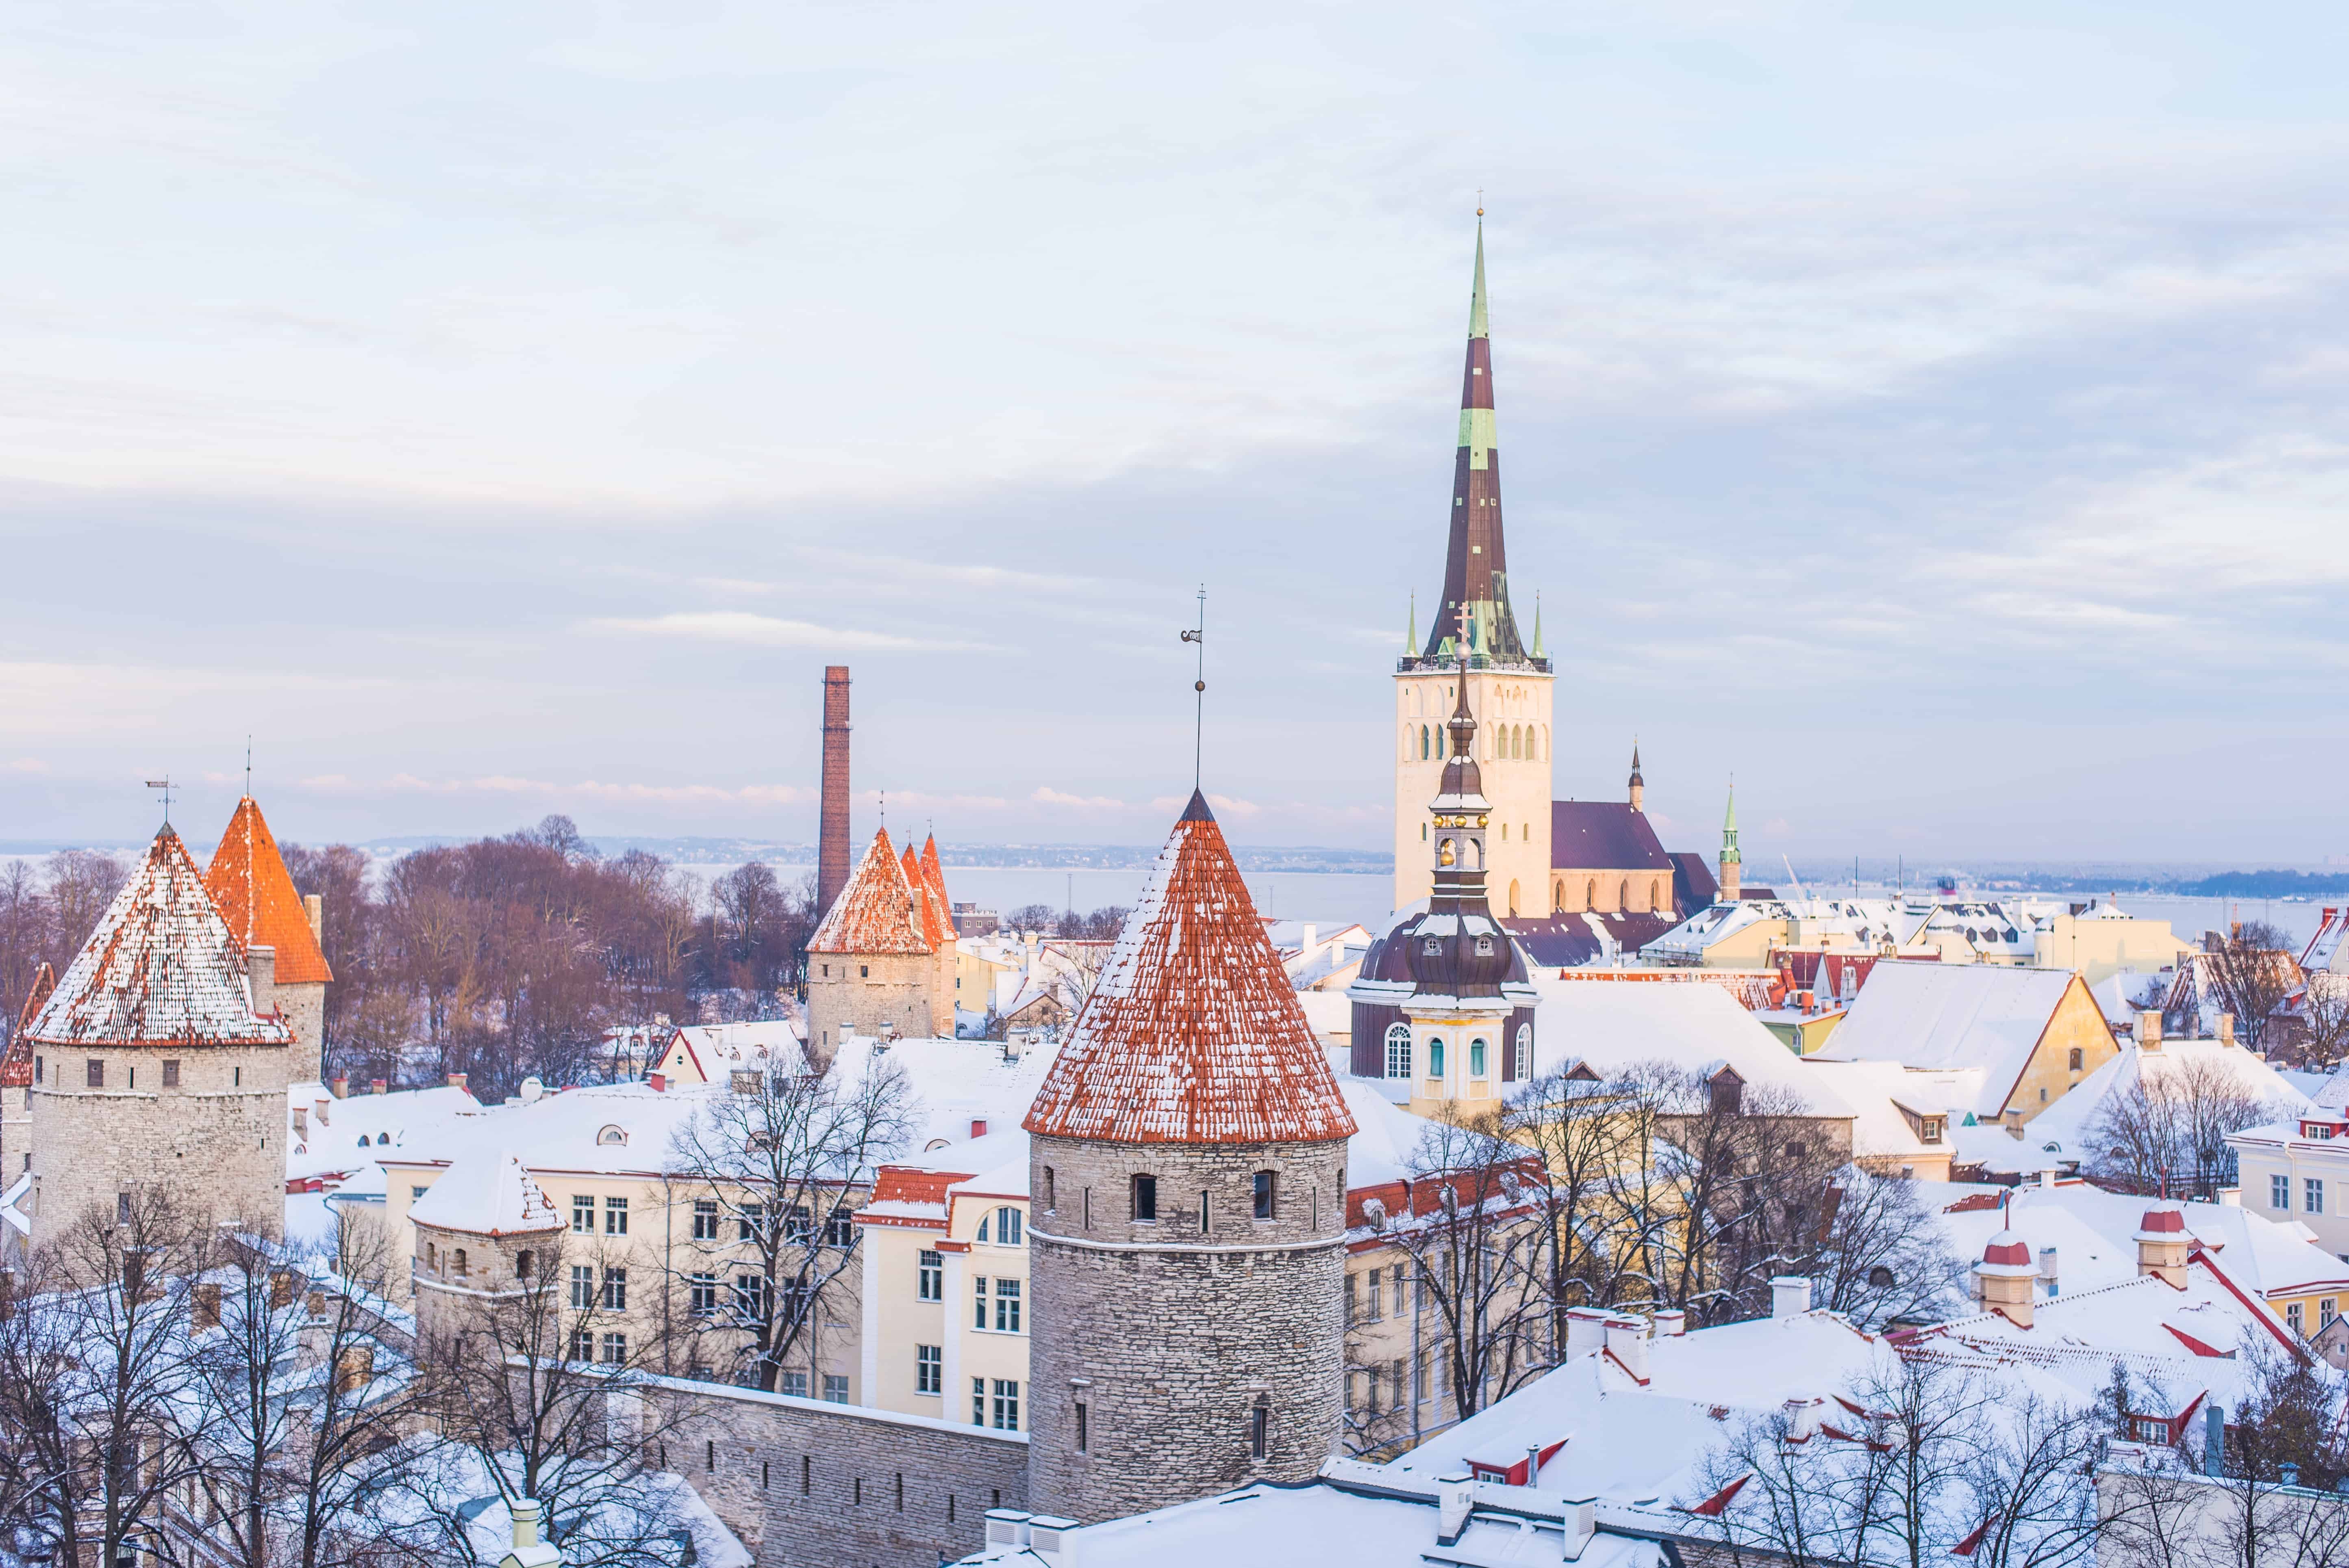 Old City of Tallinn